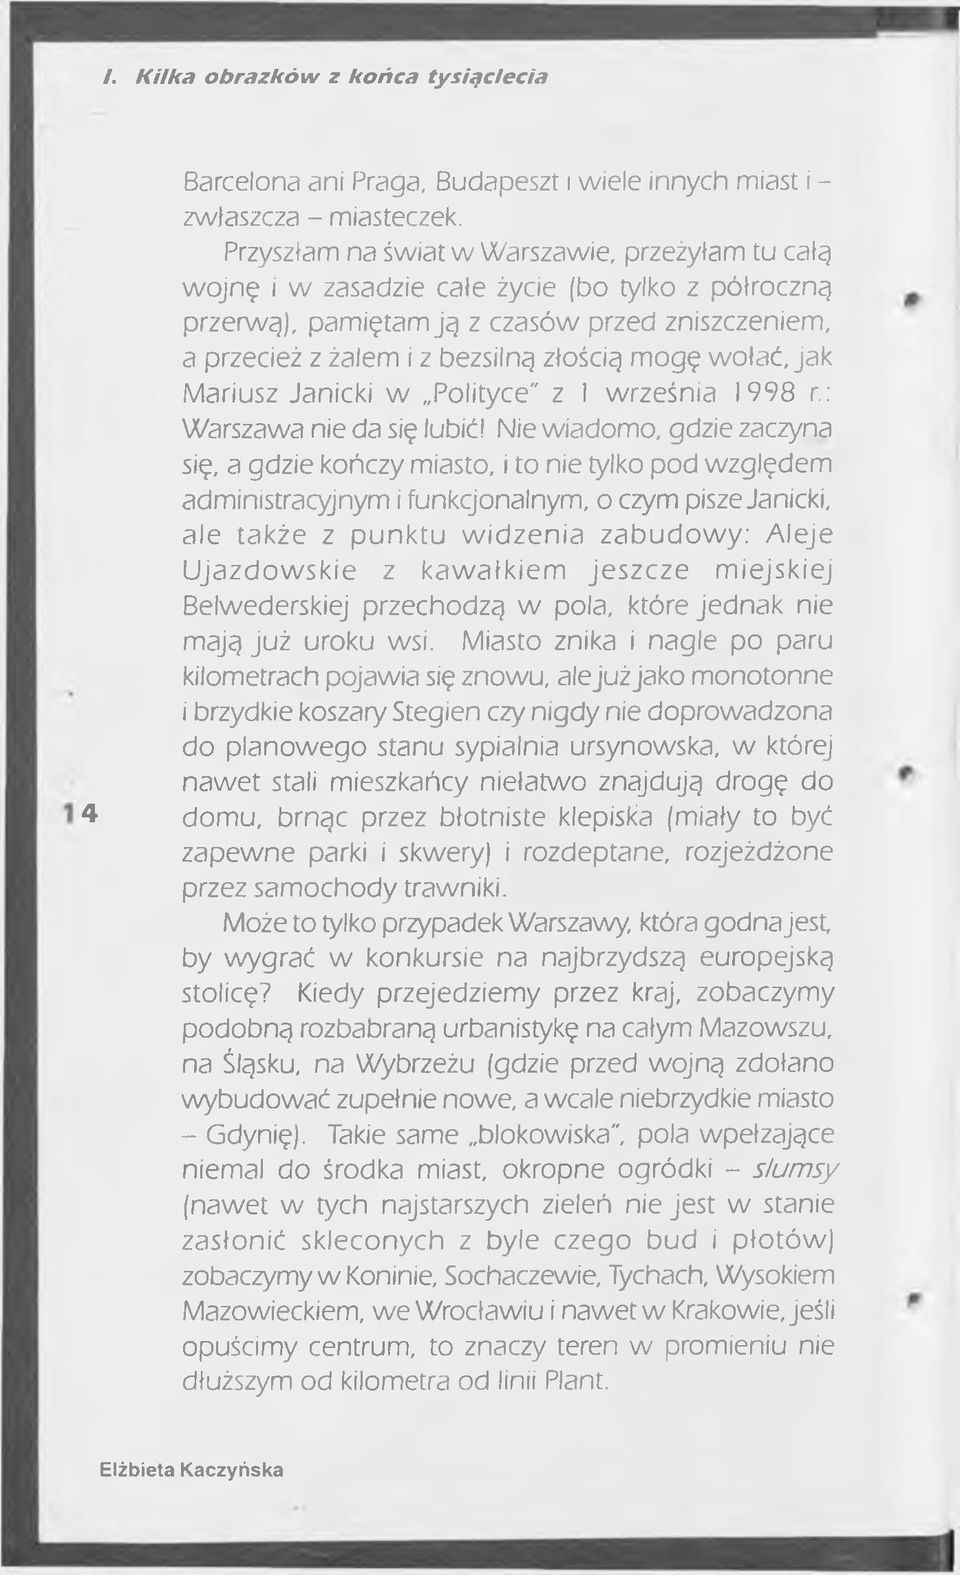 wołać, jak Mariusz Janicki w Polityce" z I września 1998 r.: Warszawa nie da się lubić!